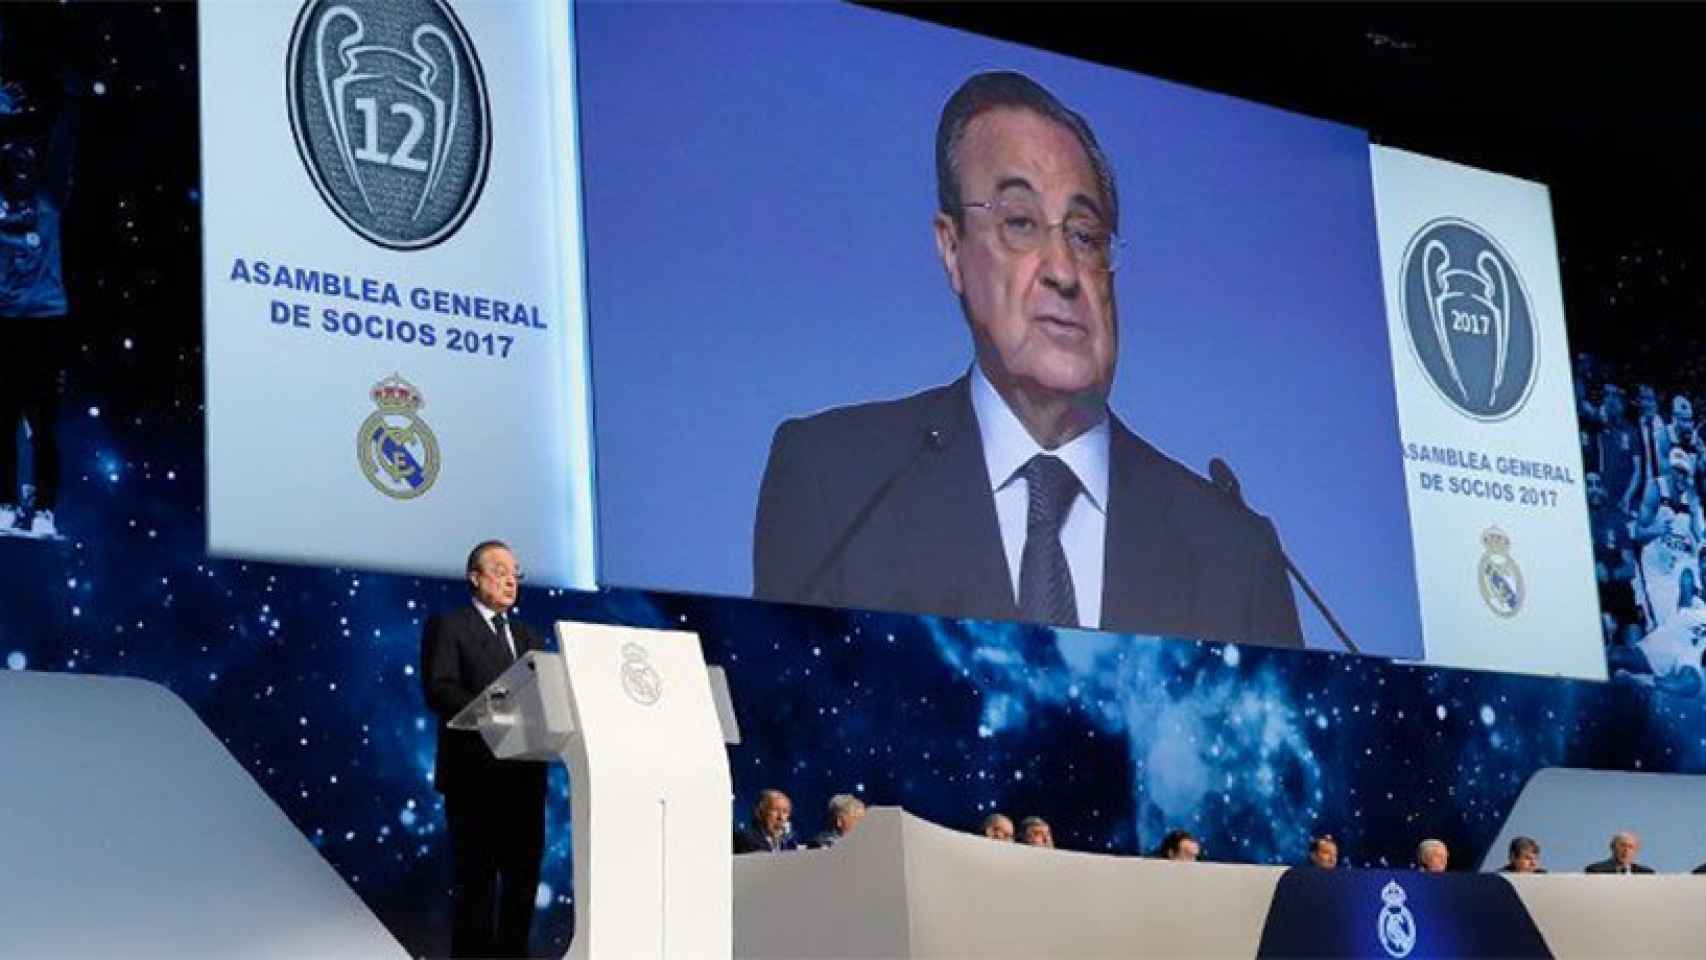 Asamblea de Socios Representantes del Real Madrid 2017